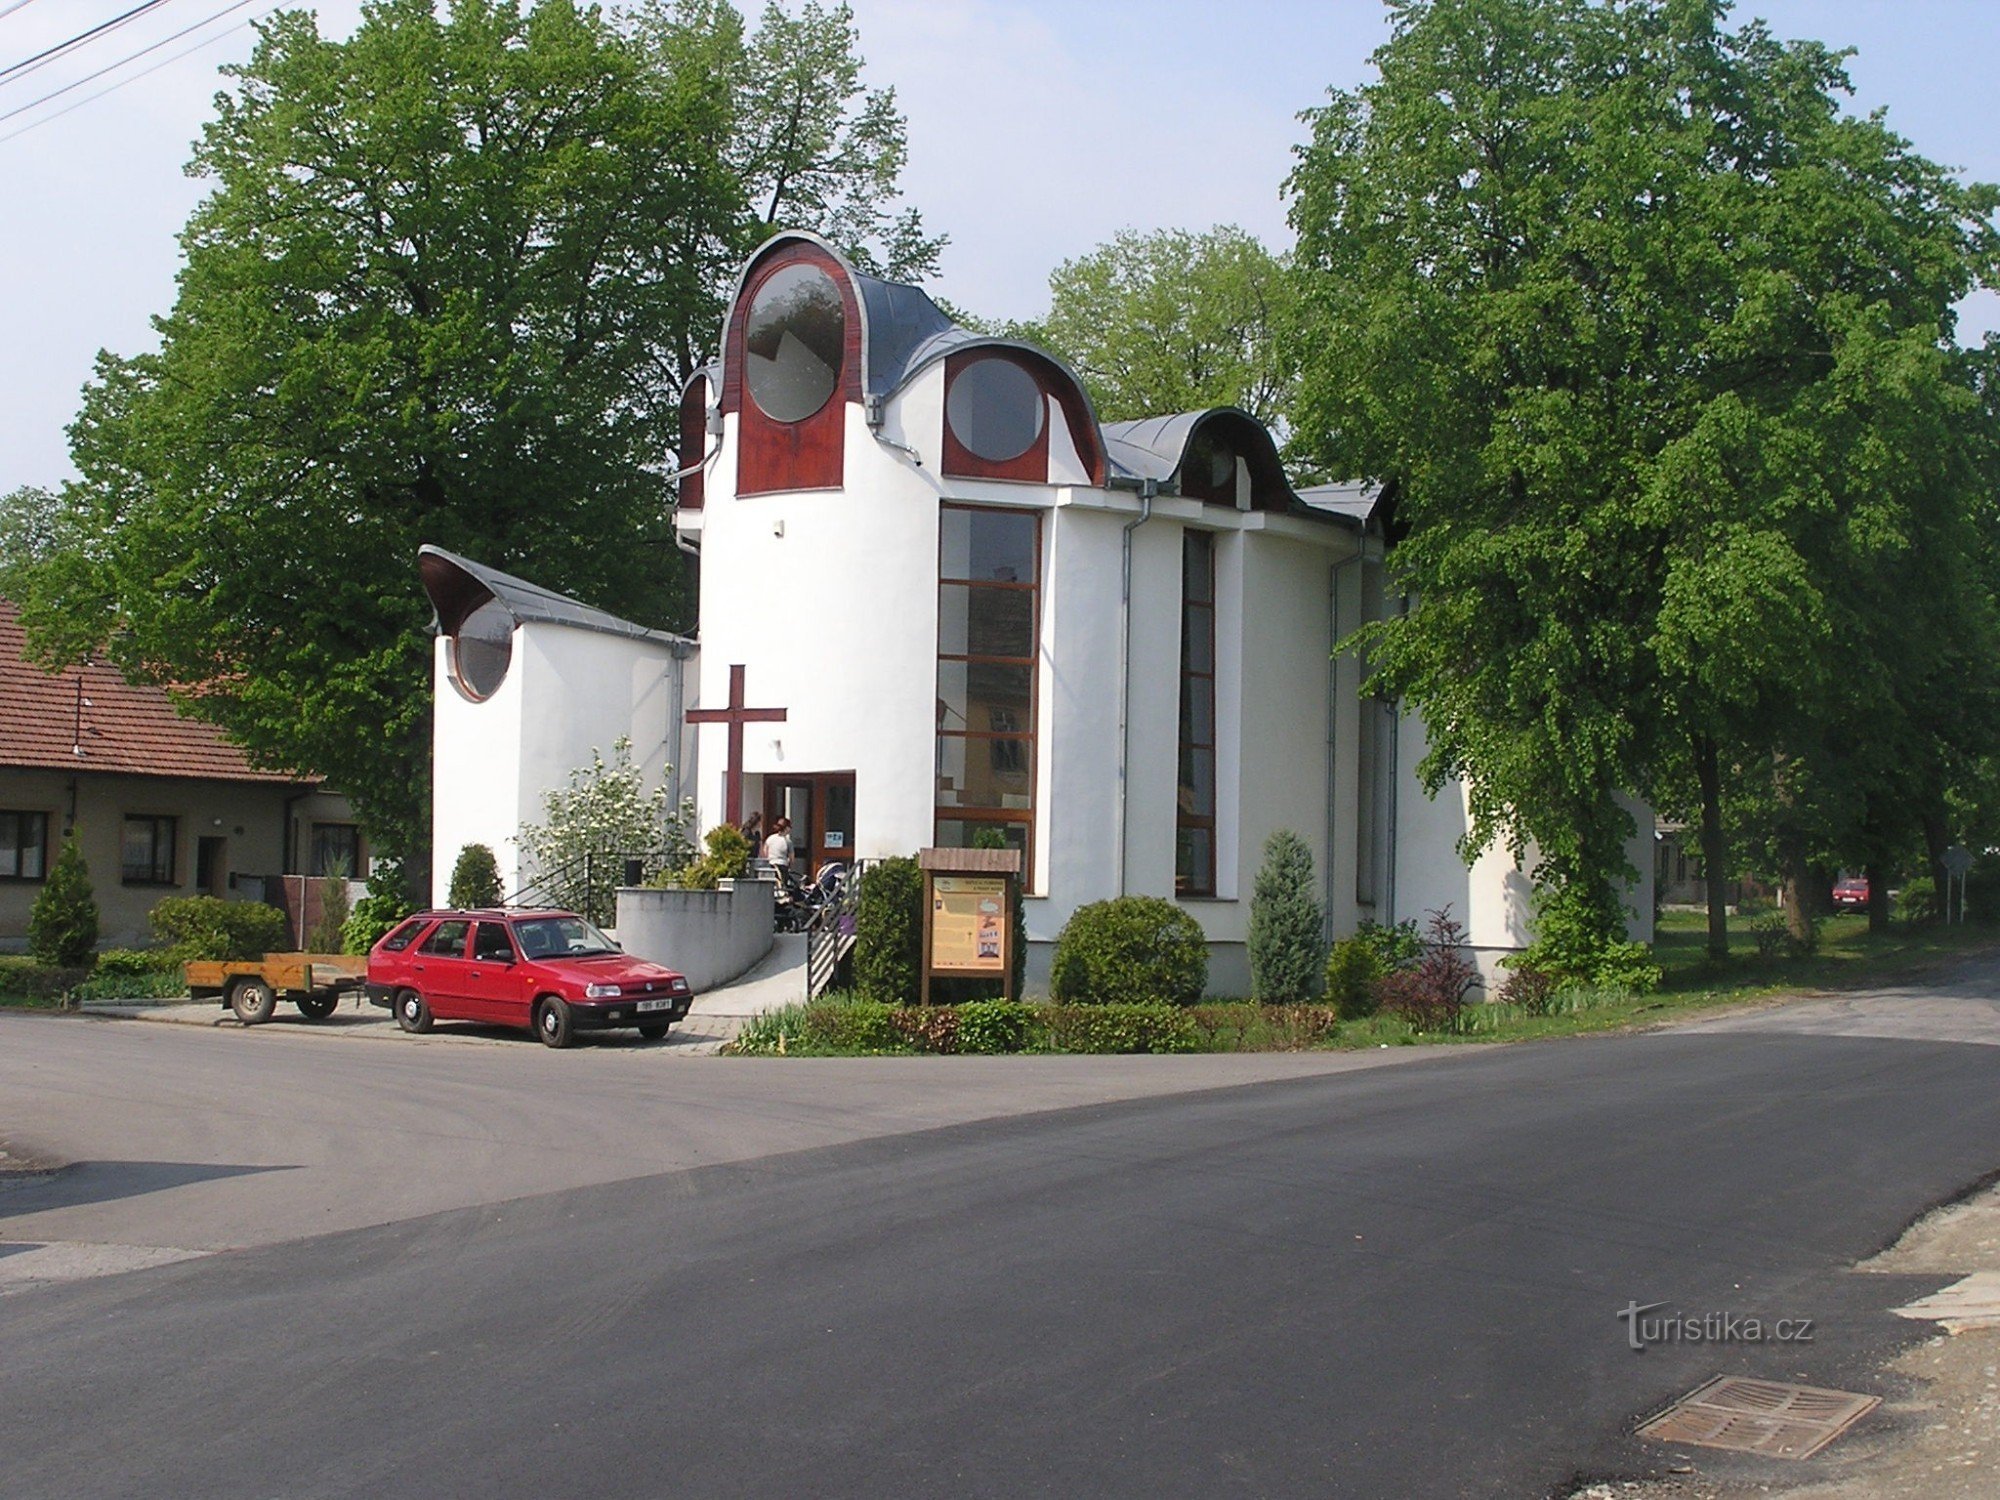 St. Florian's Chapel - 1.5.2009